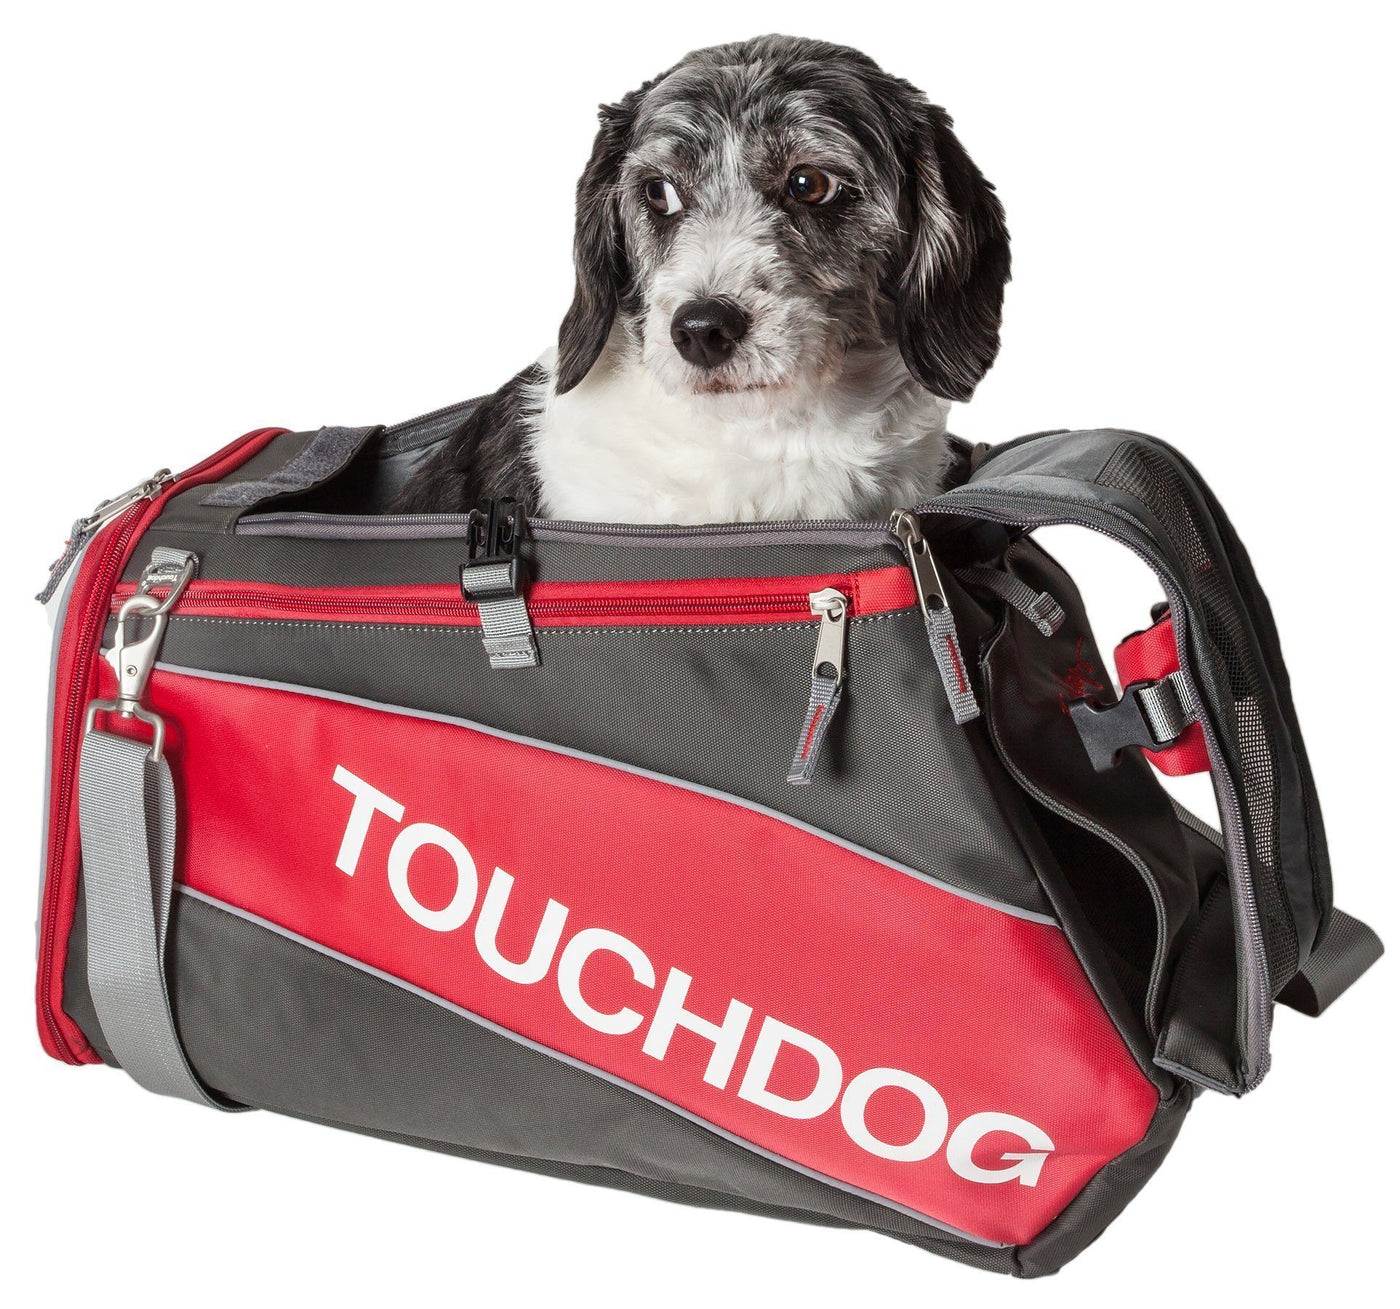 Touchdog 'Wiggle-Sack' Fashion Designer Front and Backpack Dog Carrier - Blue - Medium